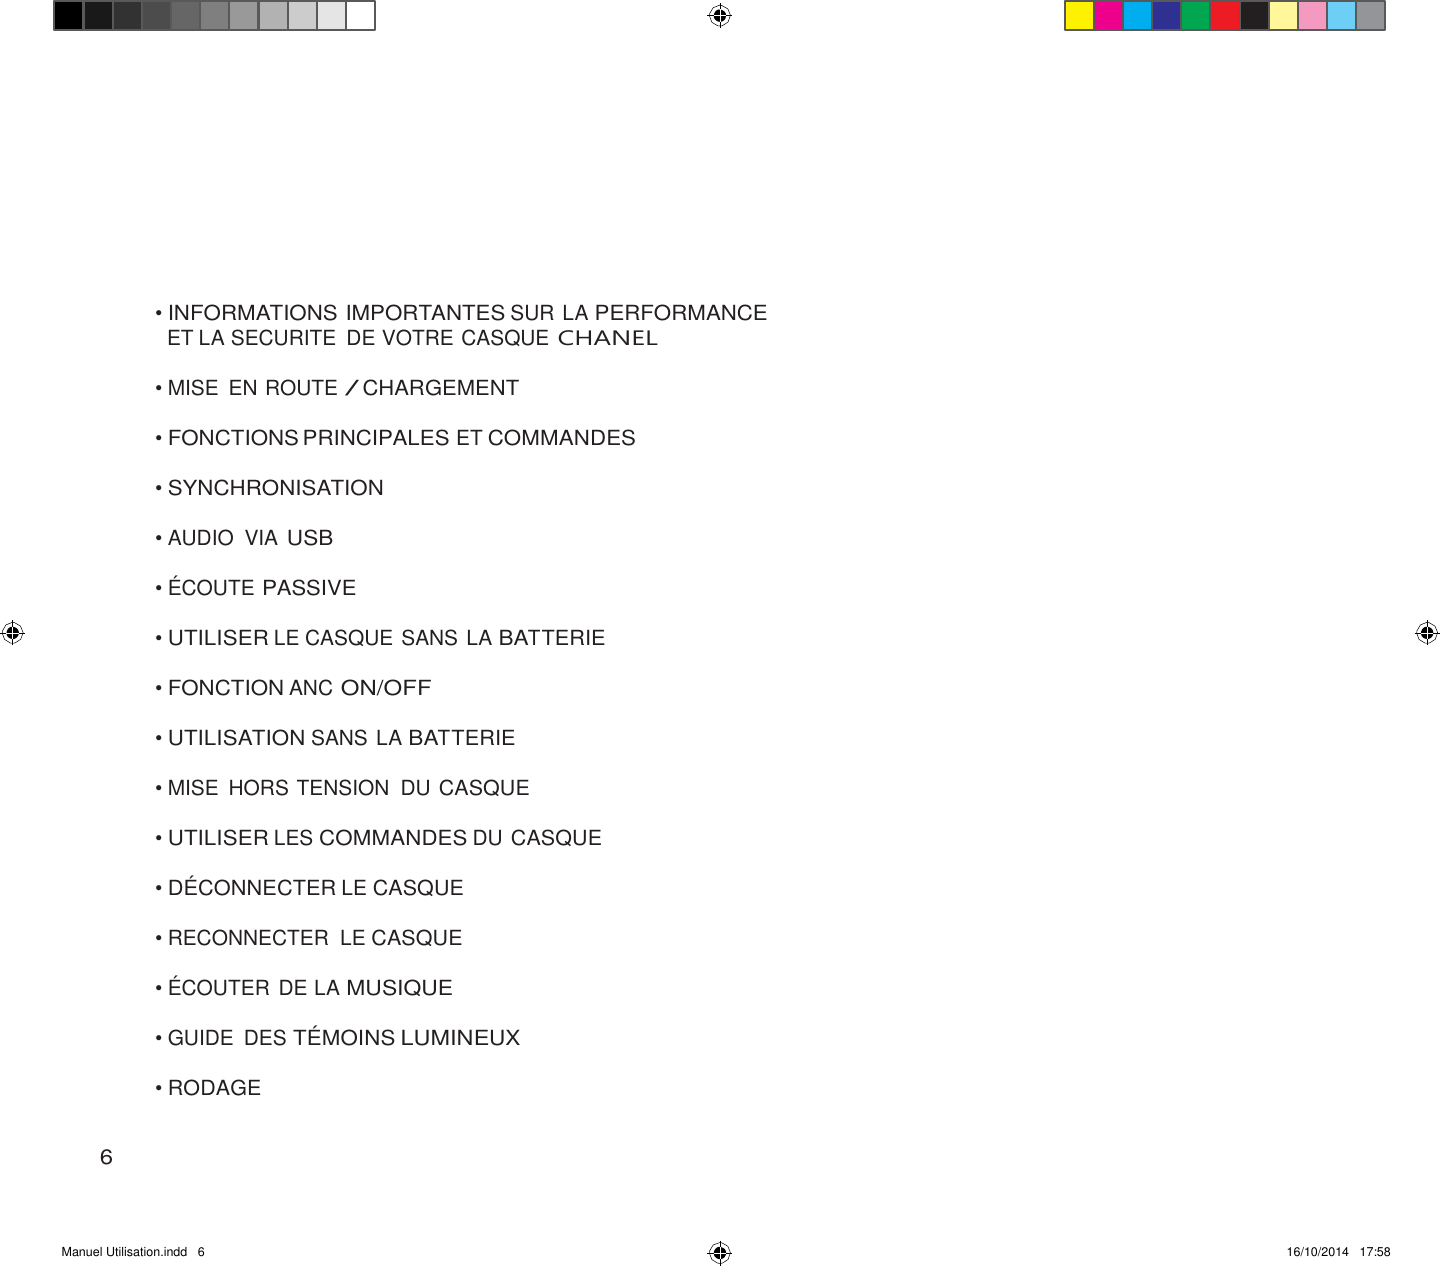 Manuel Utilisation.indd   6 16/10/2014   17:58               • INFORMATIONS IMPORTANTES SUR LA PERFORMANCE ET LA SECURITE  DE VOTRE CASQUE CHANEL  • MISE  EN ROUTE / CHARGEMENT  • FONCTIONS PRINCIPALES ET COMMANDES  • SYNCHRONISATION  • AUDIO  VIA USB  • ÉCOUTE PASSIVE  • UTILISER LE CASQUE SANS LA BATTERIE  • FONCTION ANC ON/OFF  • UTILISATION SANS LA BATTERIE  • MISE  HORS TENSION  DU CASQUE  • UTILISER LES COMMANDES DU CASQUE  • DÉ CONNECTER LE CASQUE  • RECONNECTER  LE CASQUE  • ÉCOUTER DE LA MUSIQUE  • GUIDE  DES TÉ MOINS LUMINEUX  • RODAGE   6 